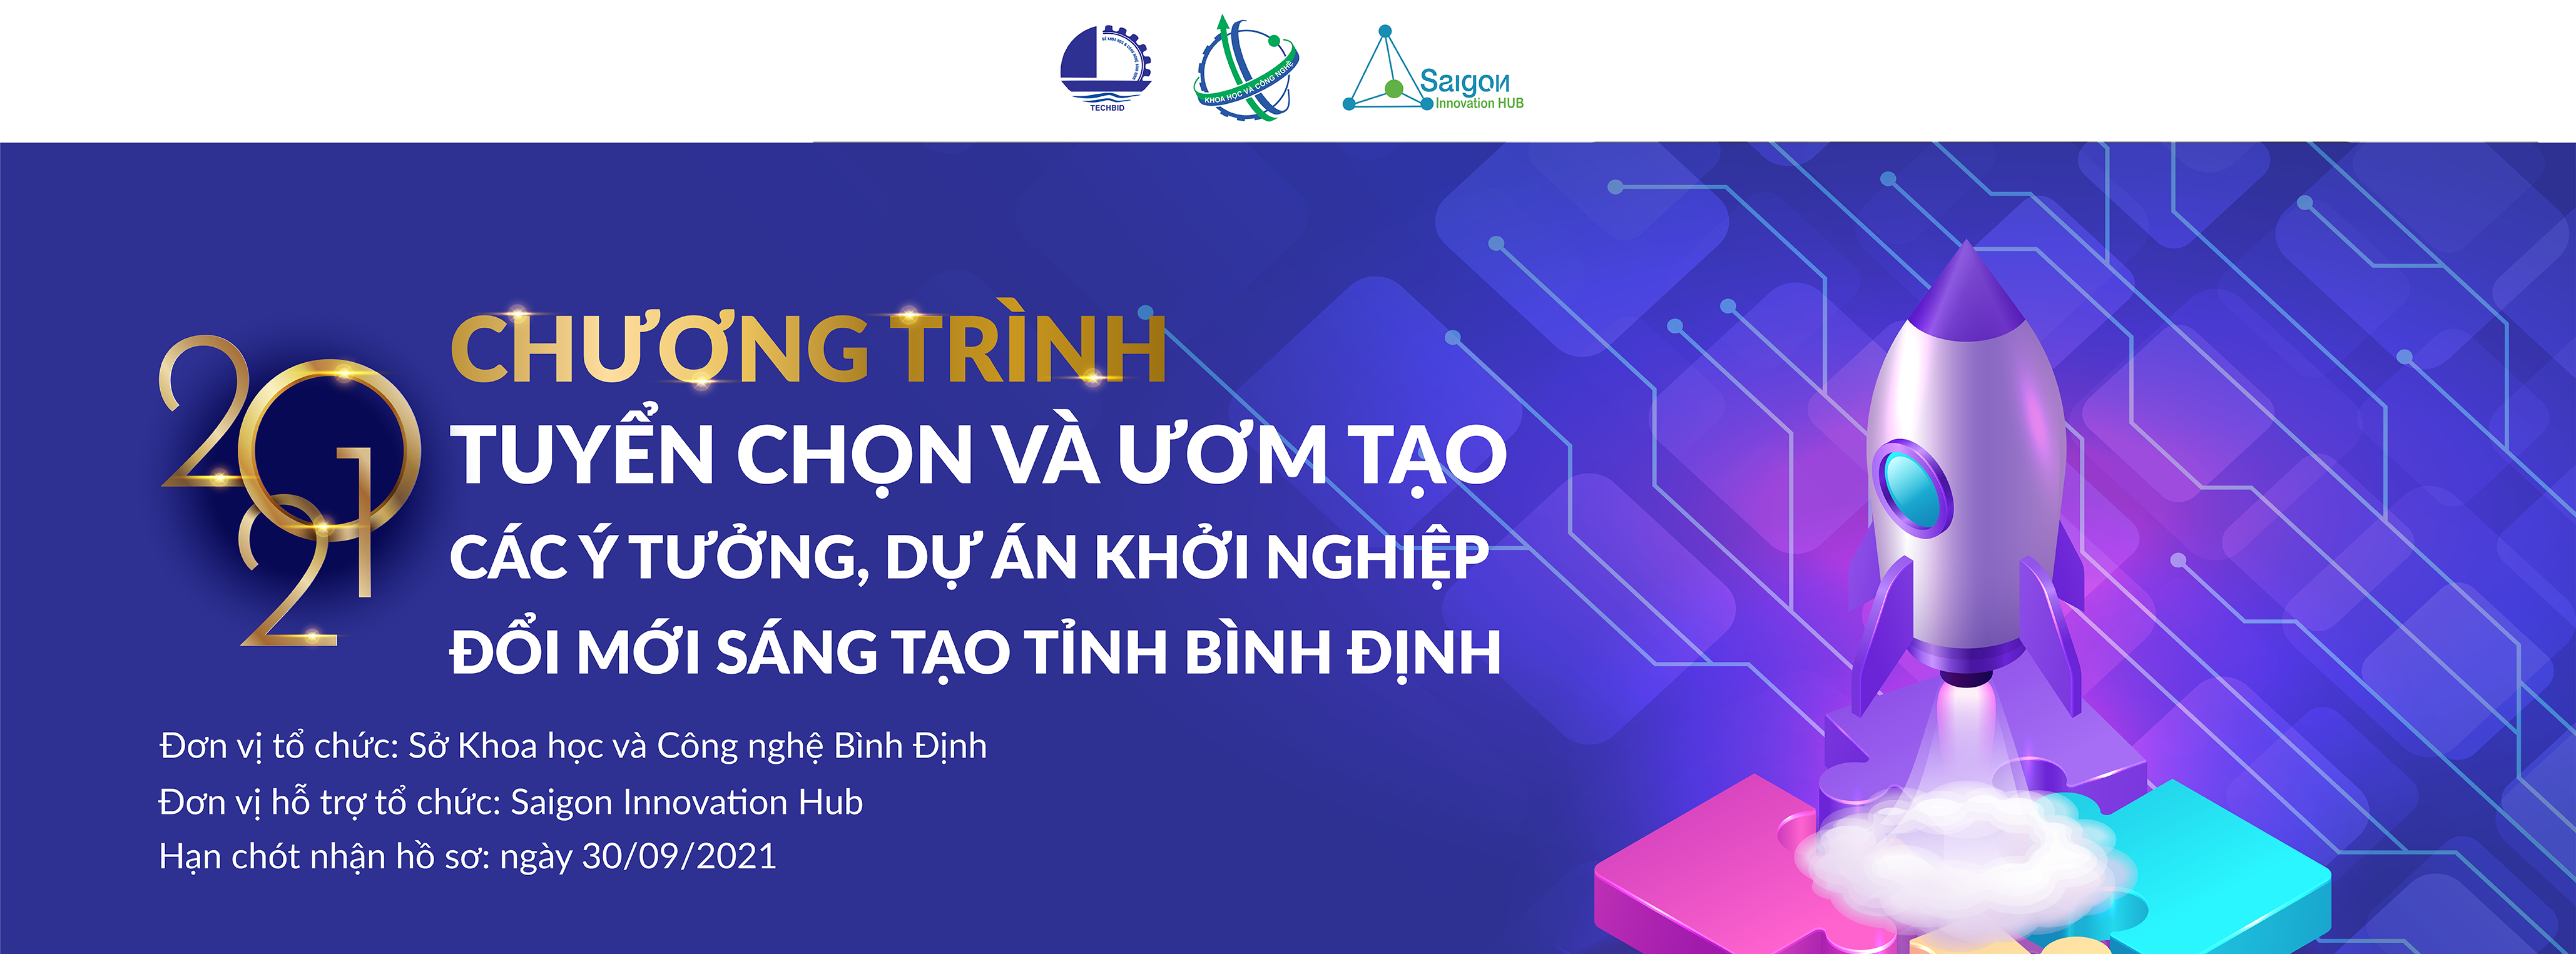 Website-Bình-Định-01-1